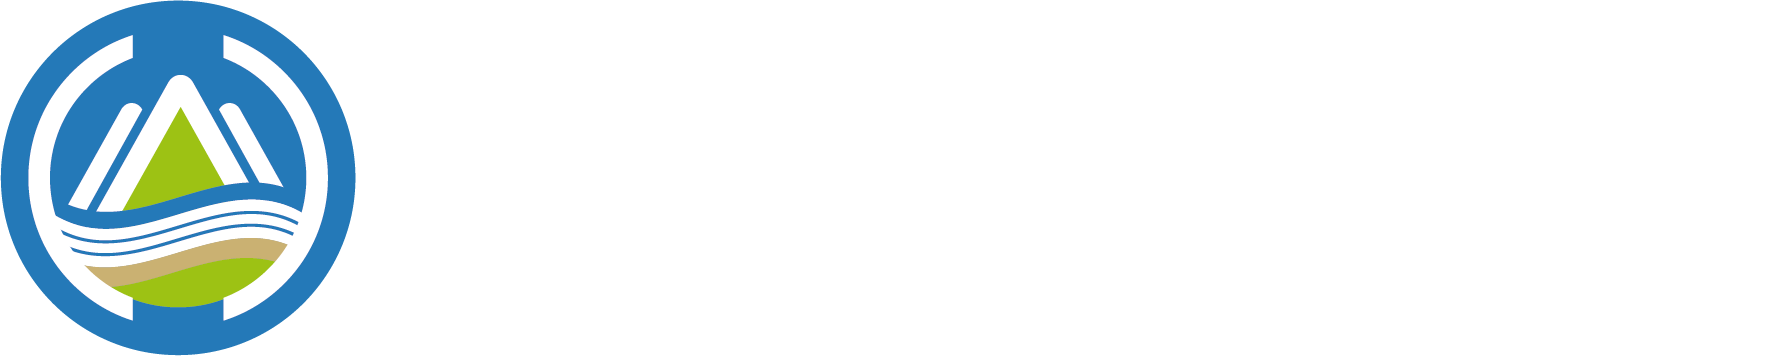 環境部環境管理署